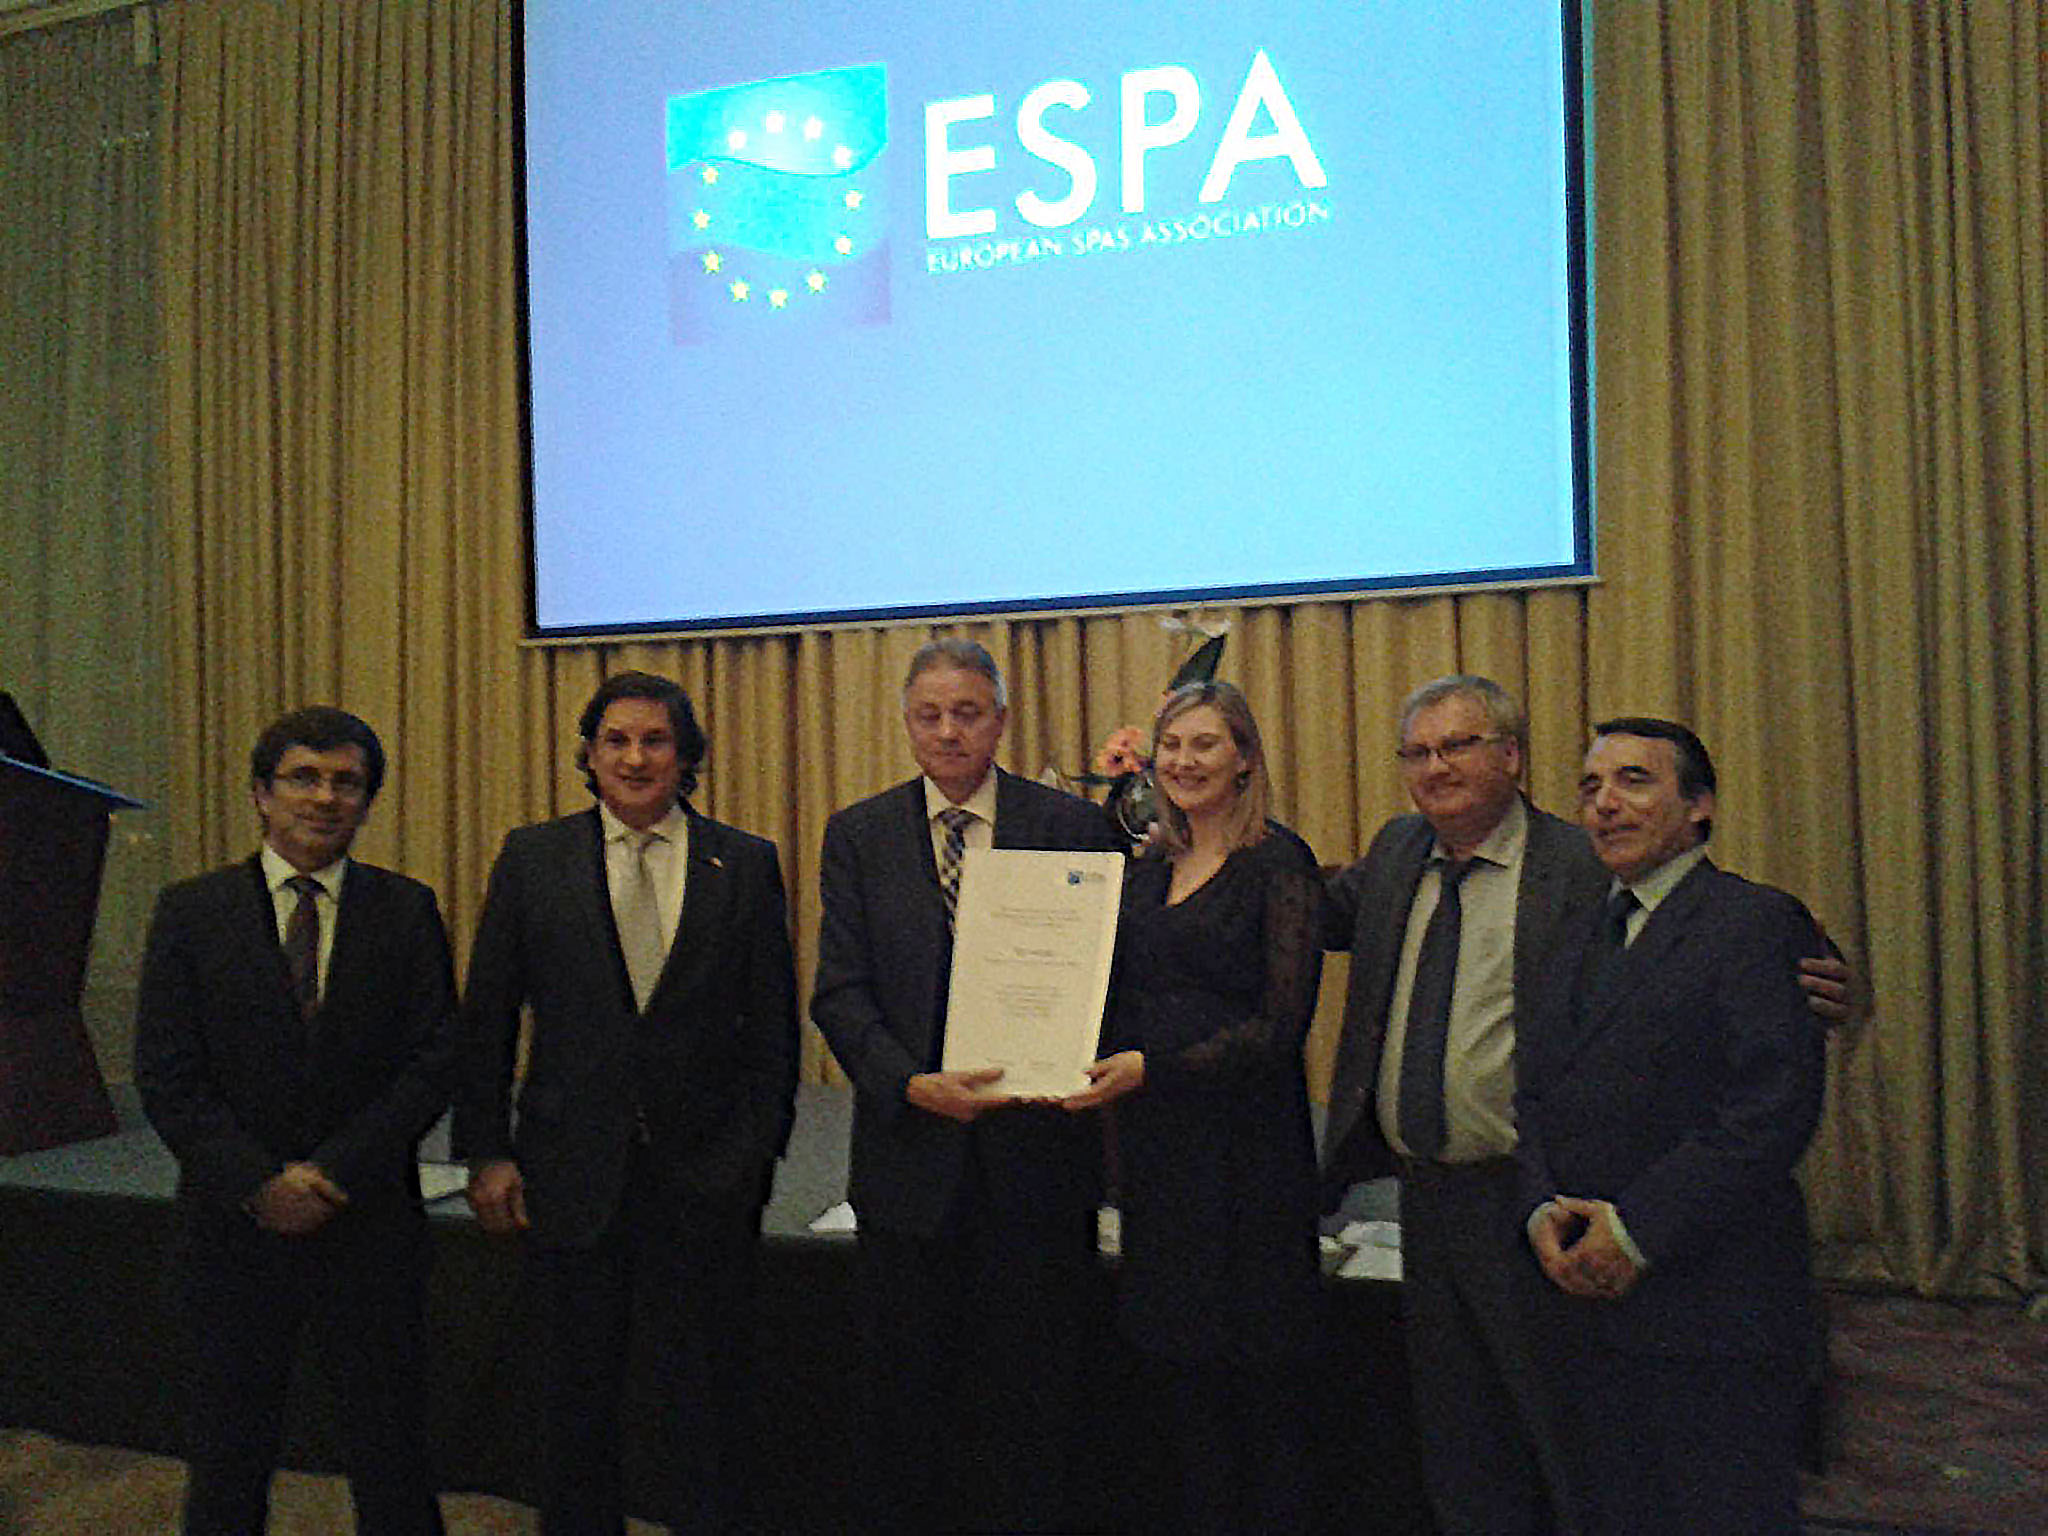 Termatalia recibe el reconocimiento de la European Spa Association a su trayectoria y promoción del termalismo